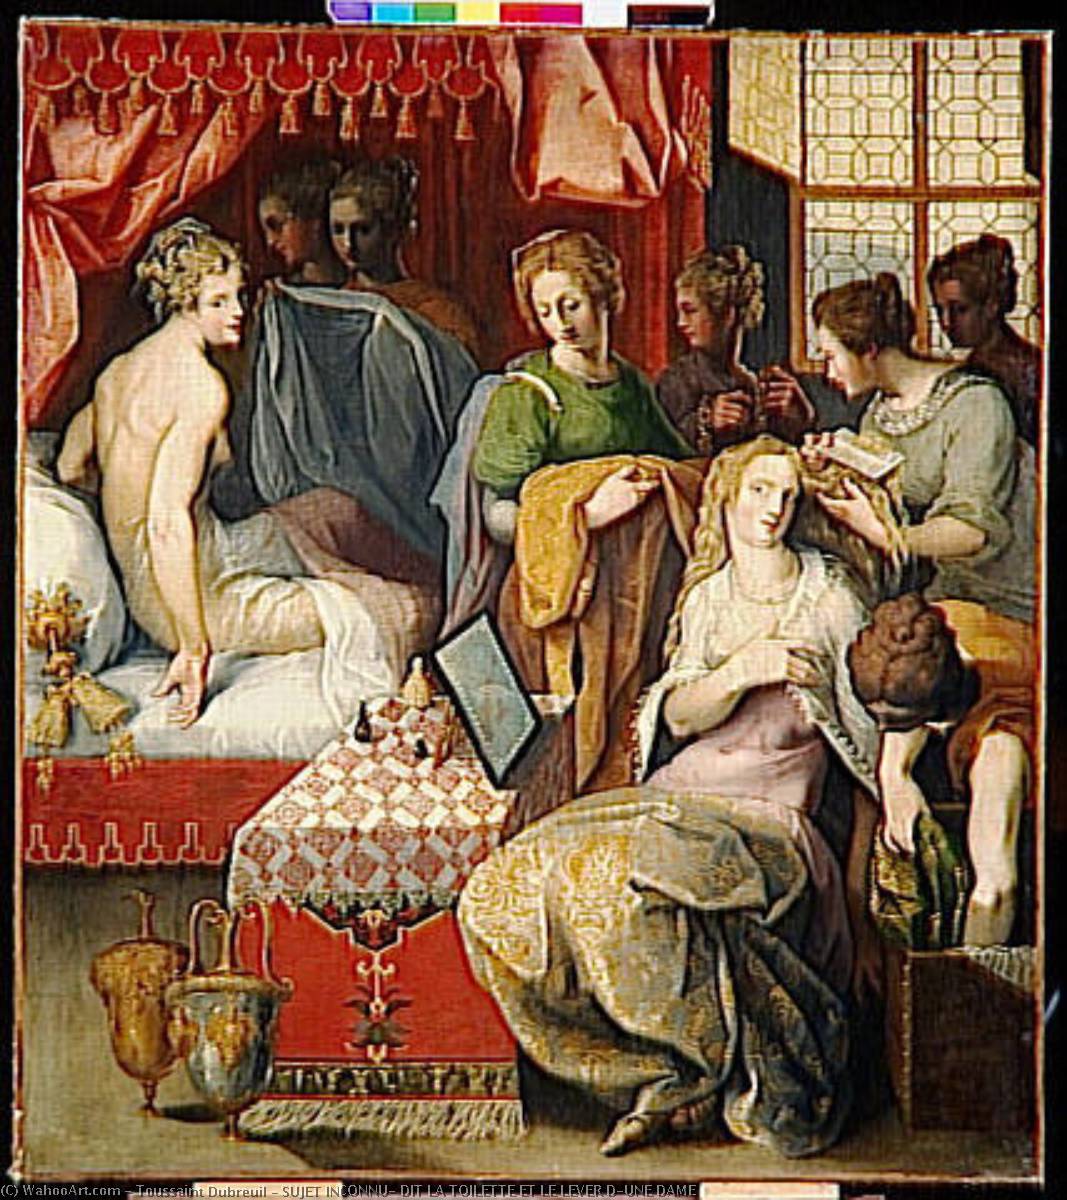 WikiOO.org - Encyclopedia of Fine Arts - Maleri, Artwork Toussaint Dubreuil - SUJET INCONNU, DIT LA TOILETTE ET LE LEVER D'UNE DAME